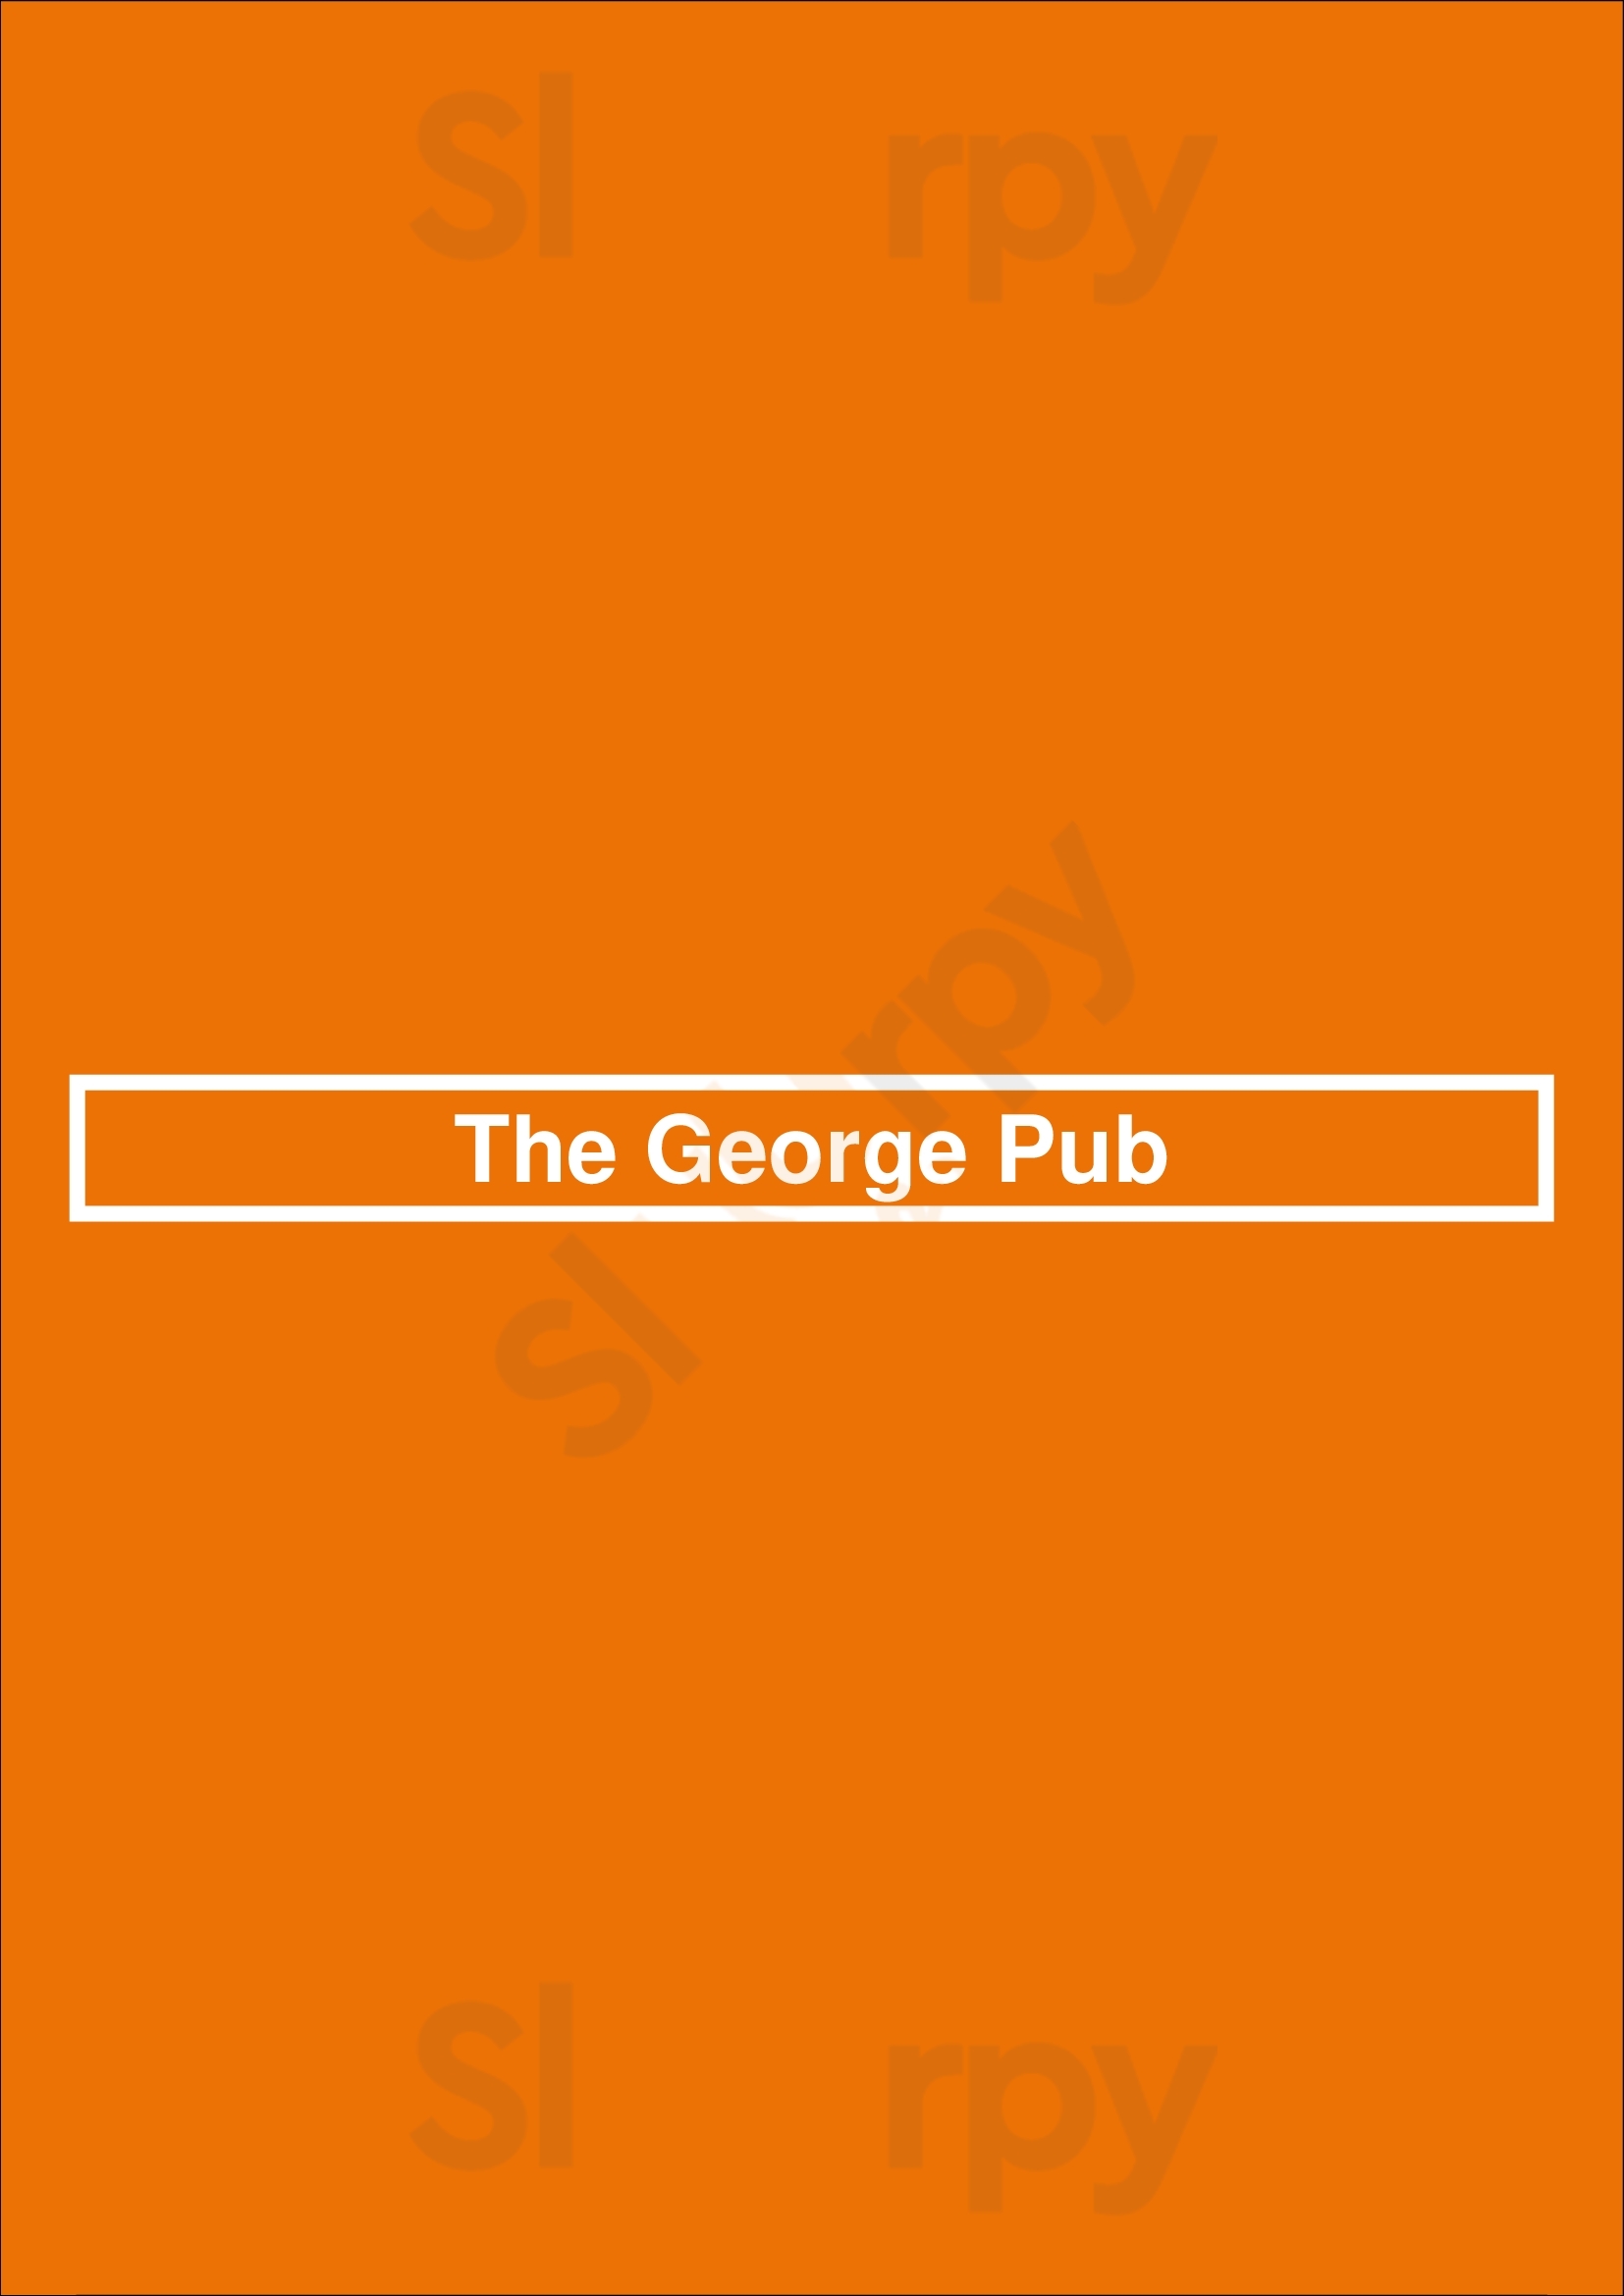 The George Pub Lisboa Menu - 1